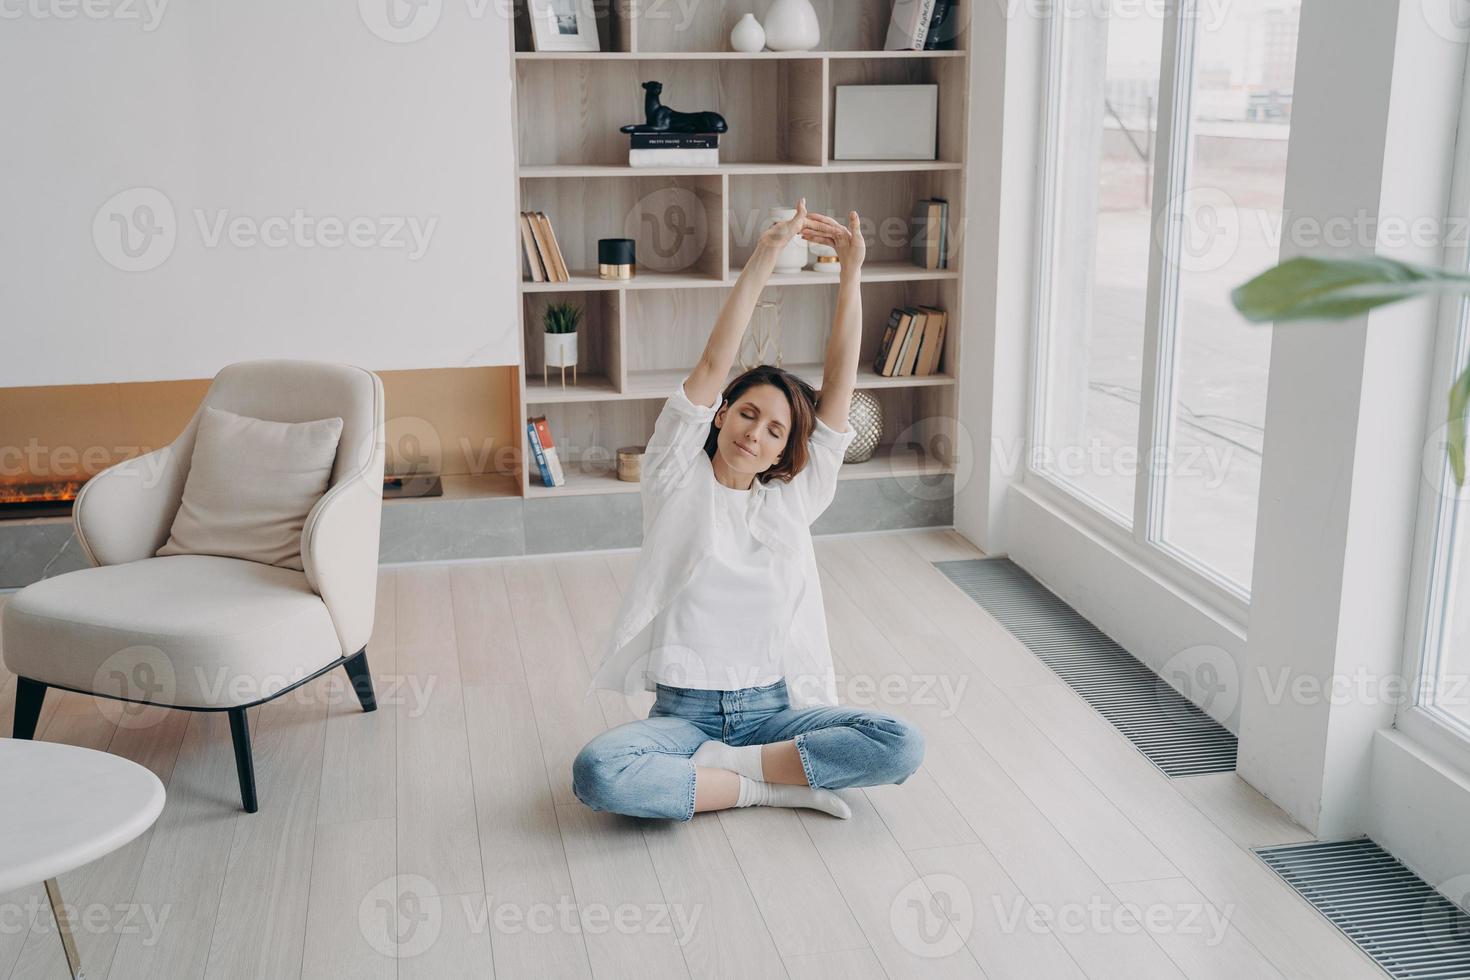 Frau praktiziert Yoga auf dem Boden im Wohnzimmer und streckt die Arme nach oben. gesunder lebensstil, wellness foto